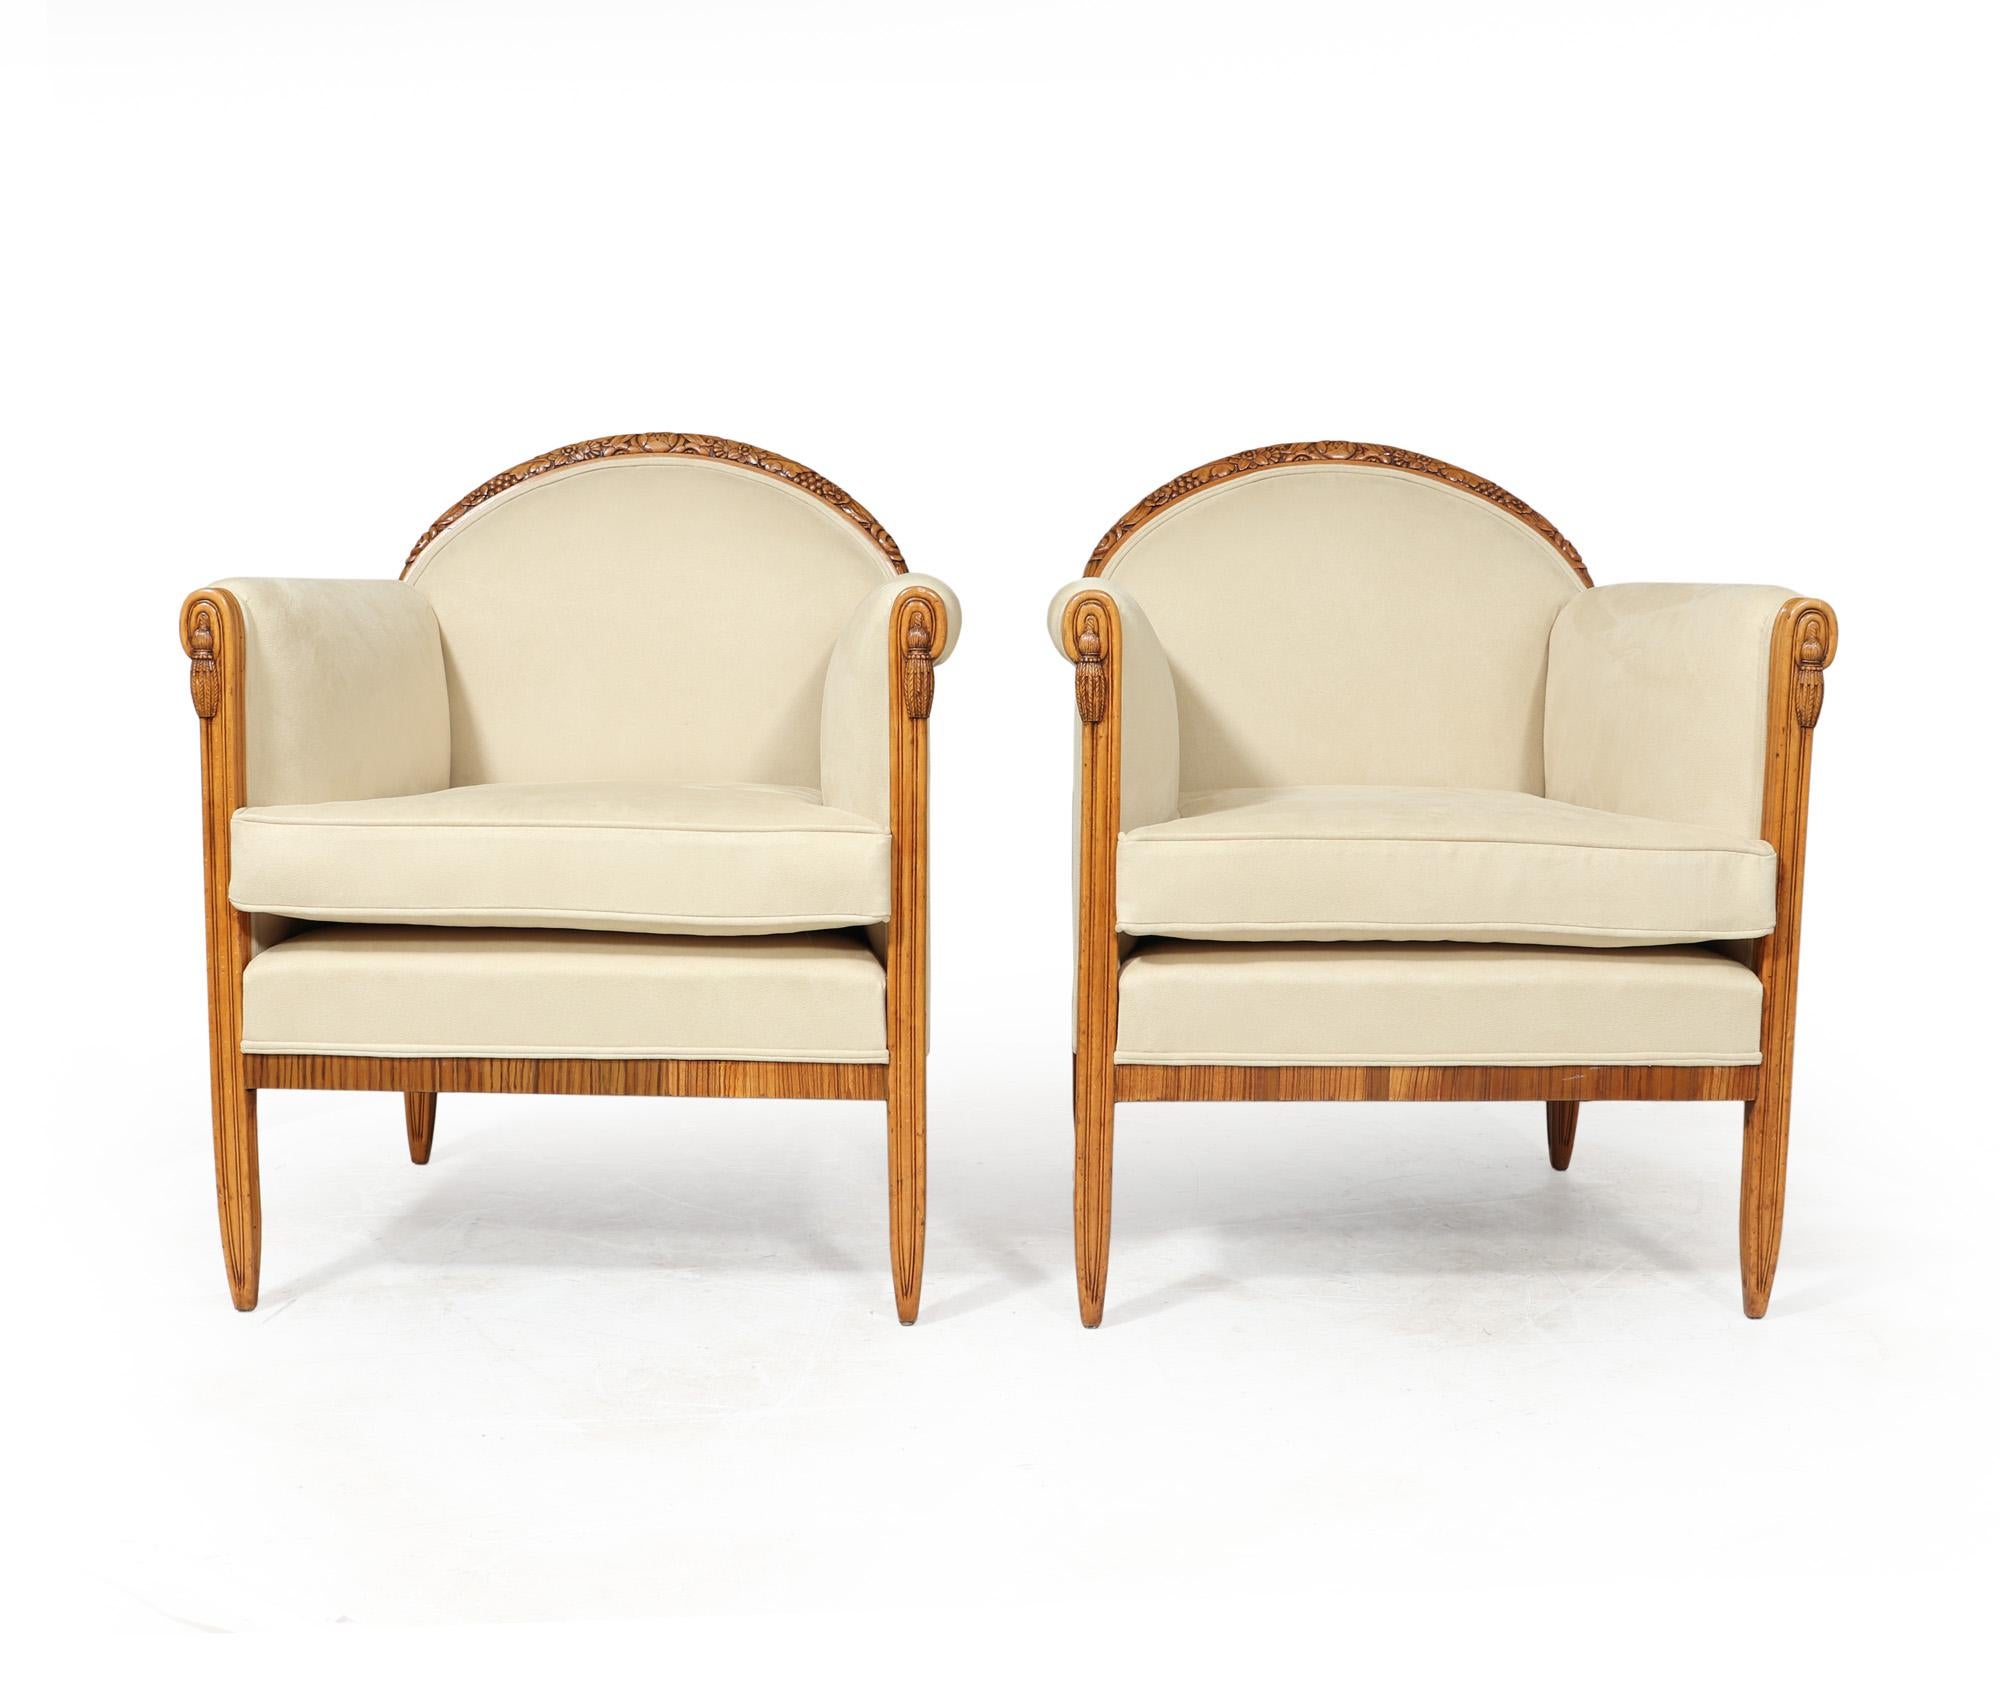 SESSEL VON PAUL FOLLOT
Ein Paar Sessel in Buche mit Zebrano Detail, knackig mit einem sehr klassischen Französisch Art Deco Form geschnitzt, entworfen und hergestellt von einem der Meister der Art Deco Zeit, Paul Follot mit einem floralen